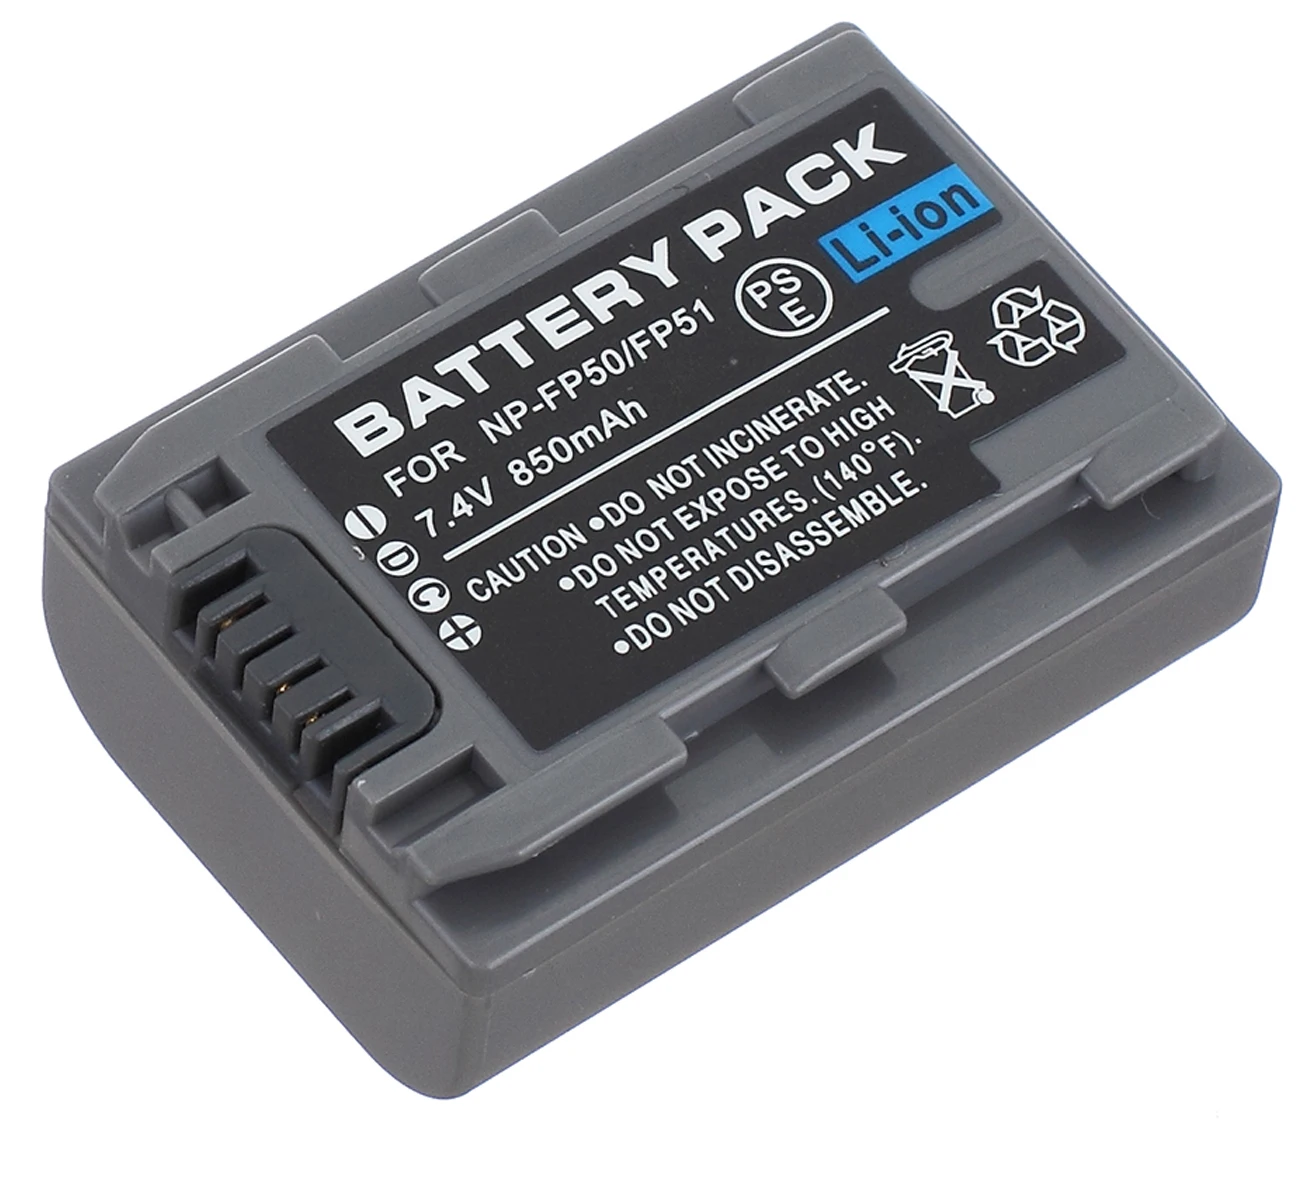 

Battery Pack for Sony DCR-SR30, DCR-SR40, DCR-SR50, DCR-SR60, DCR-SR70, DCR-SR80, DCR-SR90, DCR-SR100 Handycam Camcorder